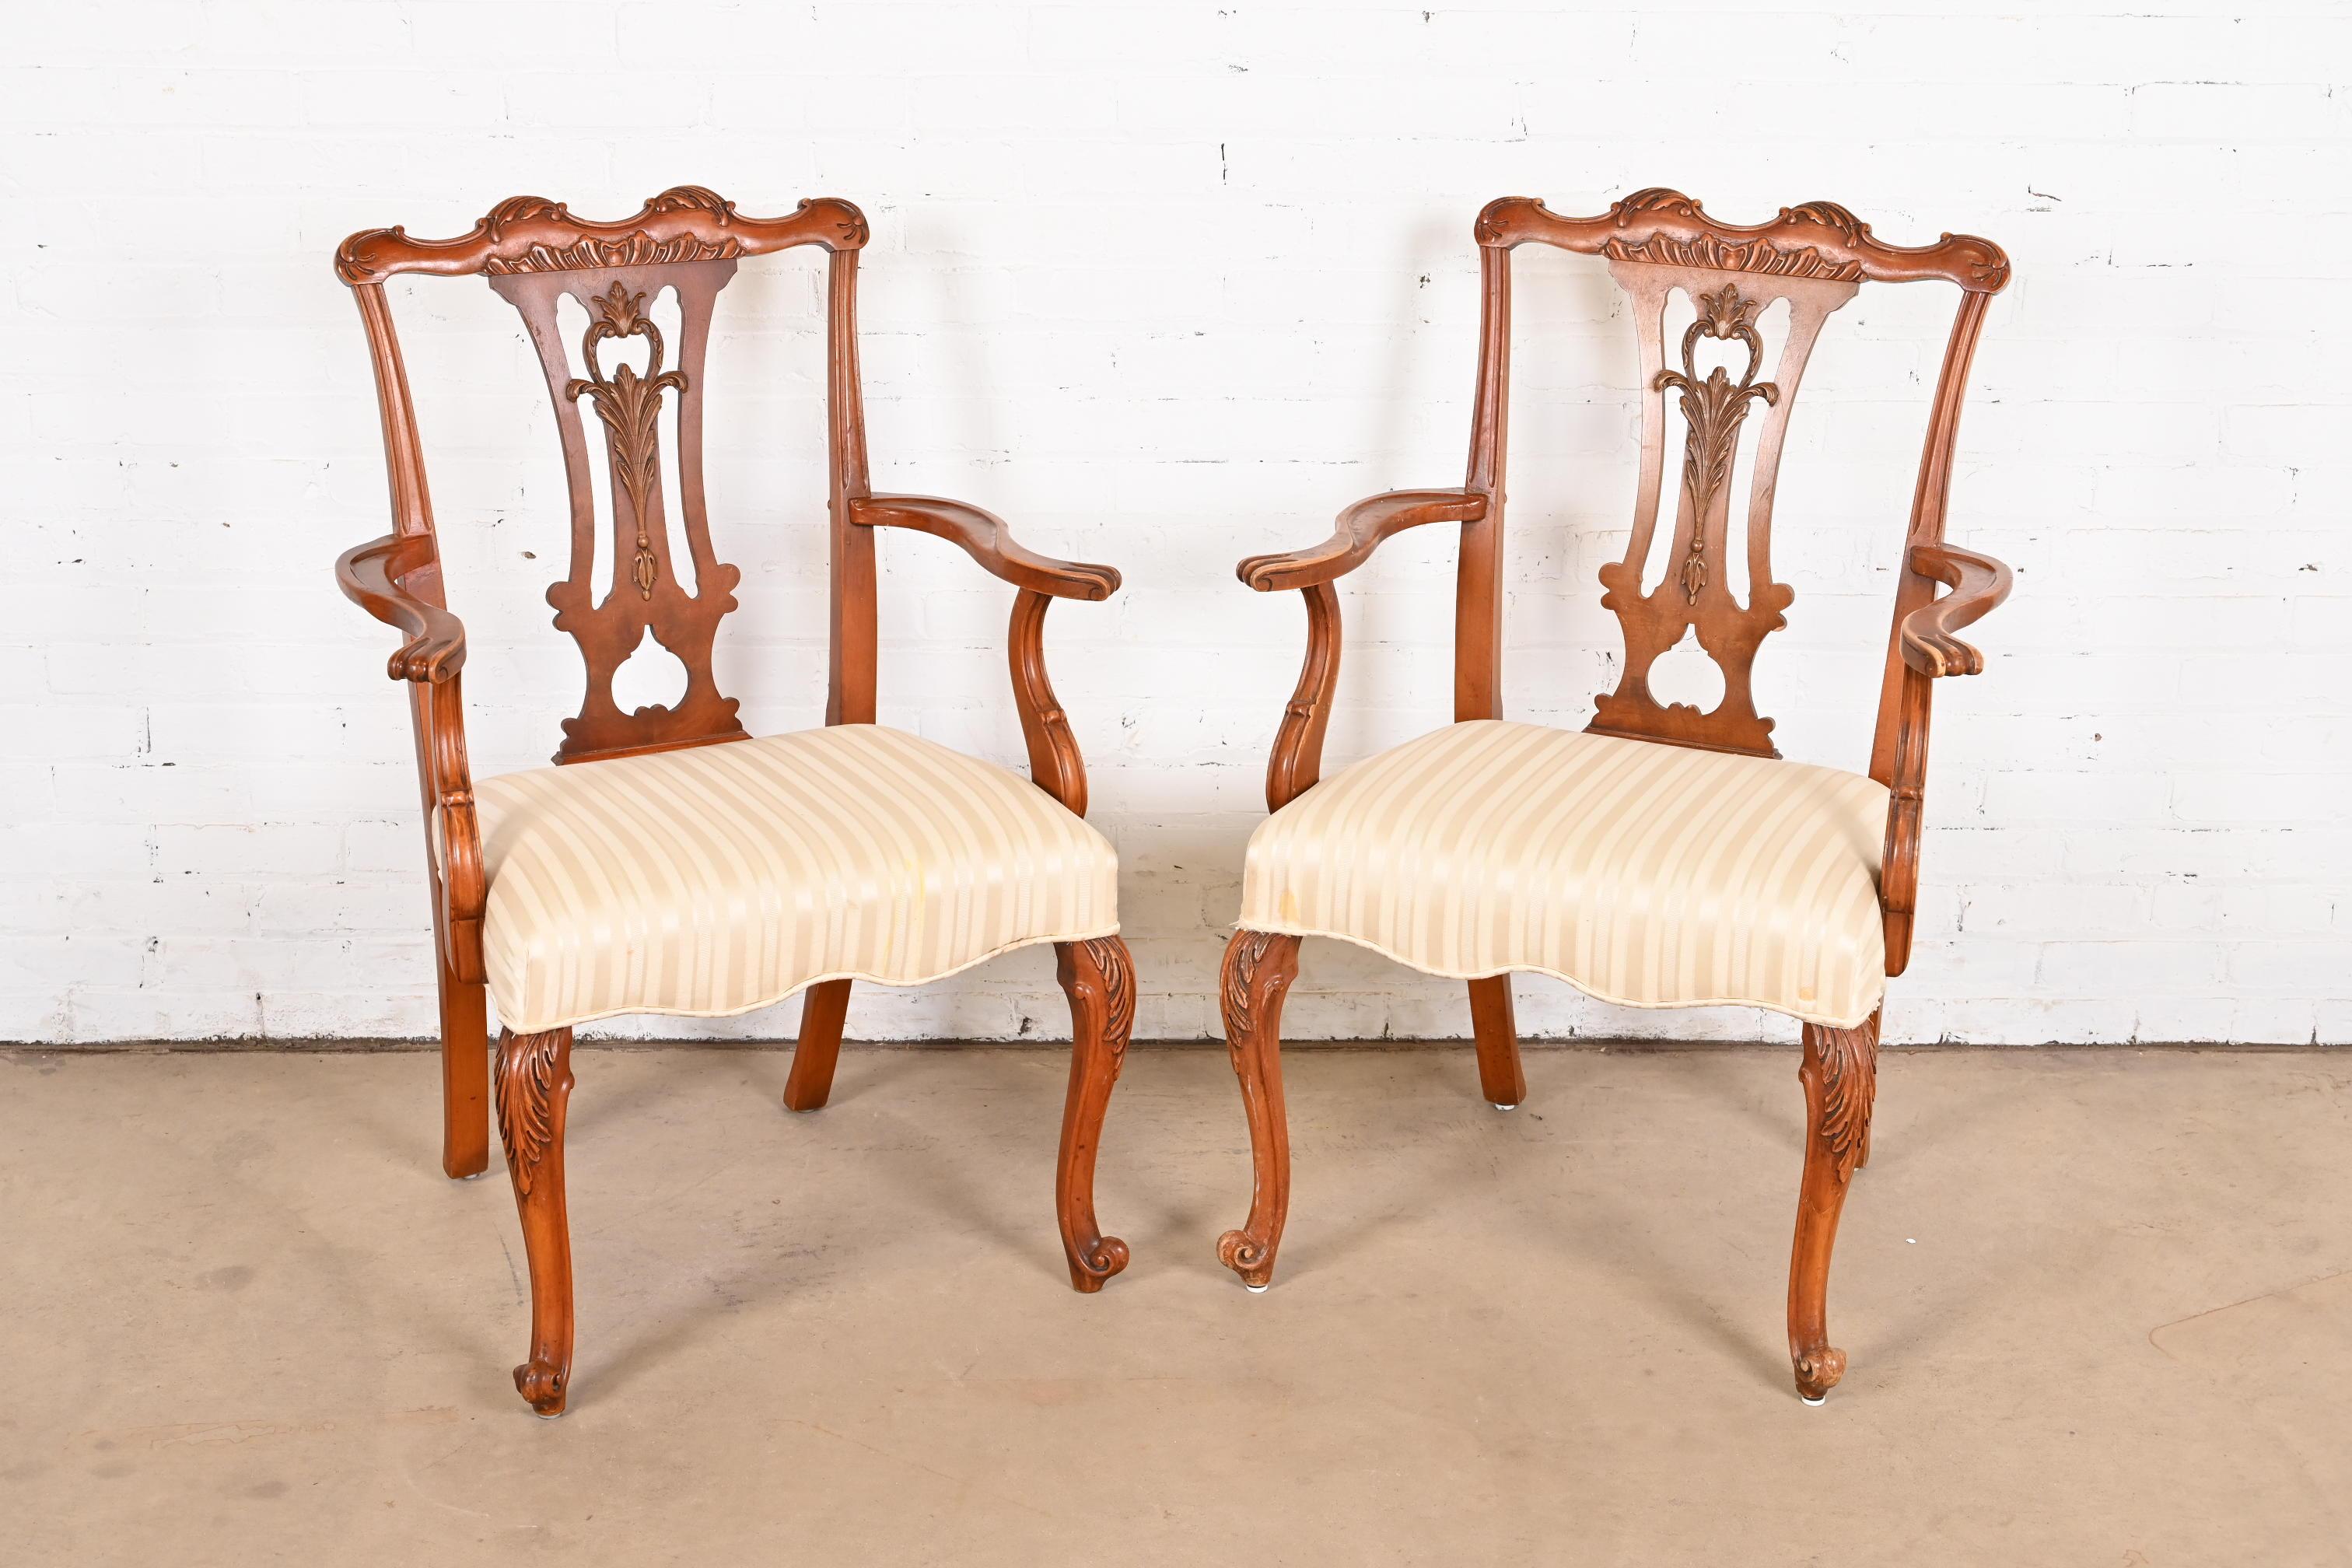 Ein wunderschönes Paar französischer Fauteuils im Louis-XV-Stil oder Esszimmer-Sessel

Von Romweber

USA, ca. 1920er Jahre

Schönes geschnitztes exotisches Akazienholz, mit gepolsterten Sitzen.

Maße: 28 